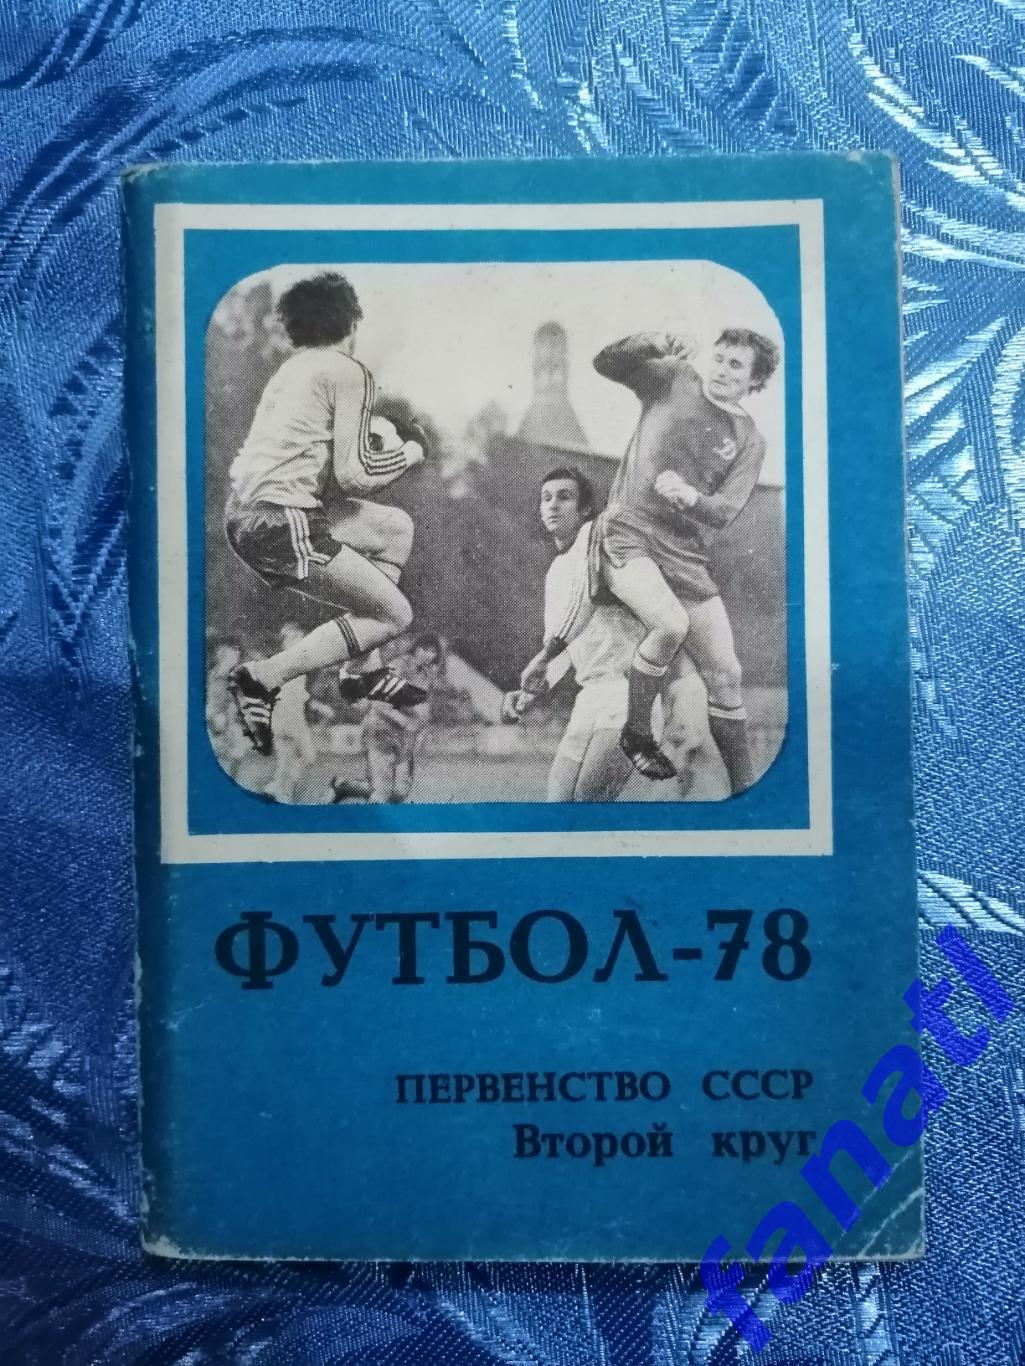 Футбол 1978 г. Календарь-справочник. Первенство СССР 2 круг